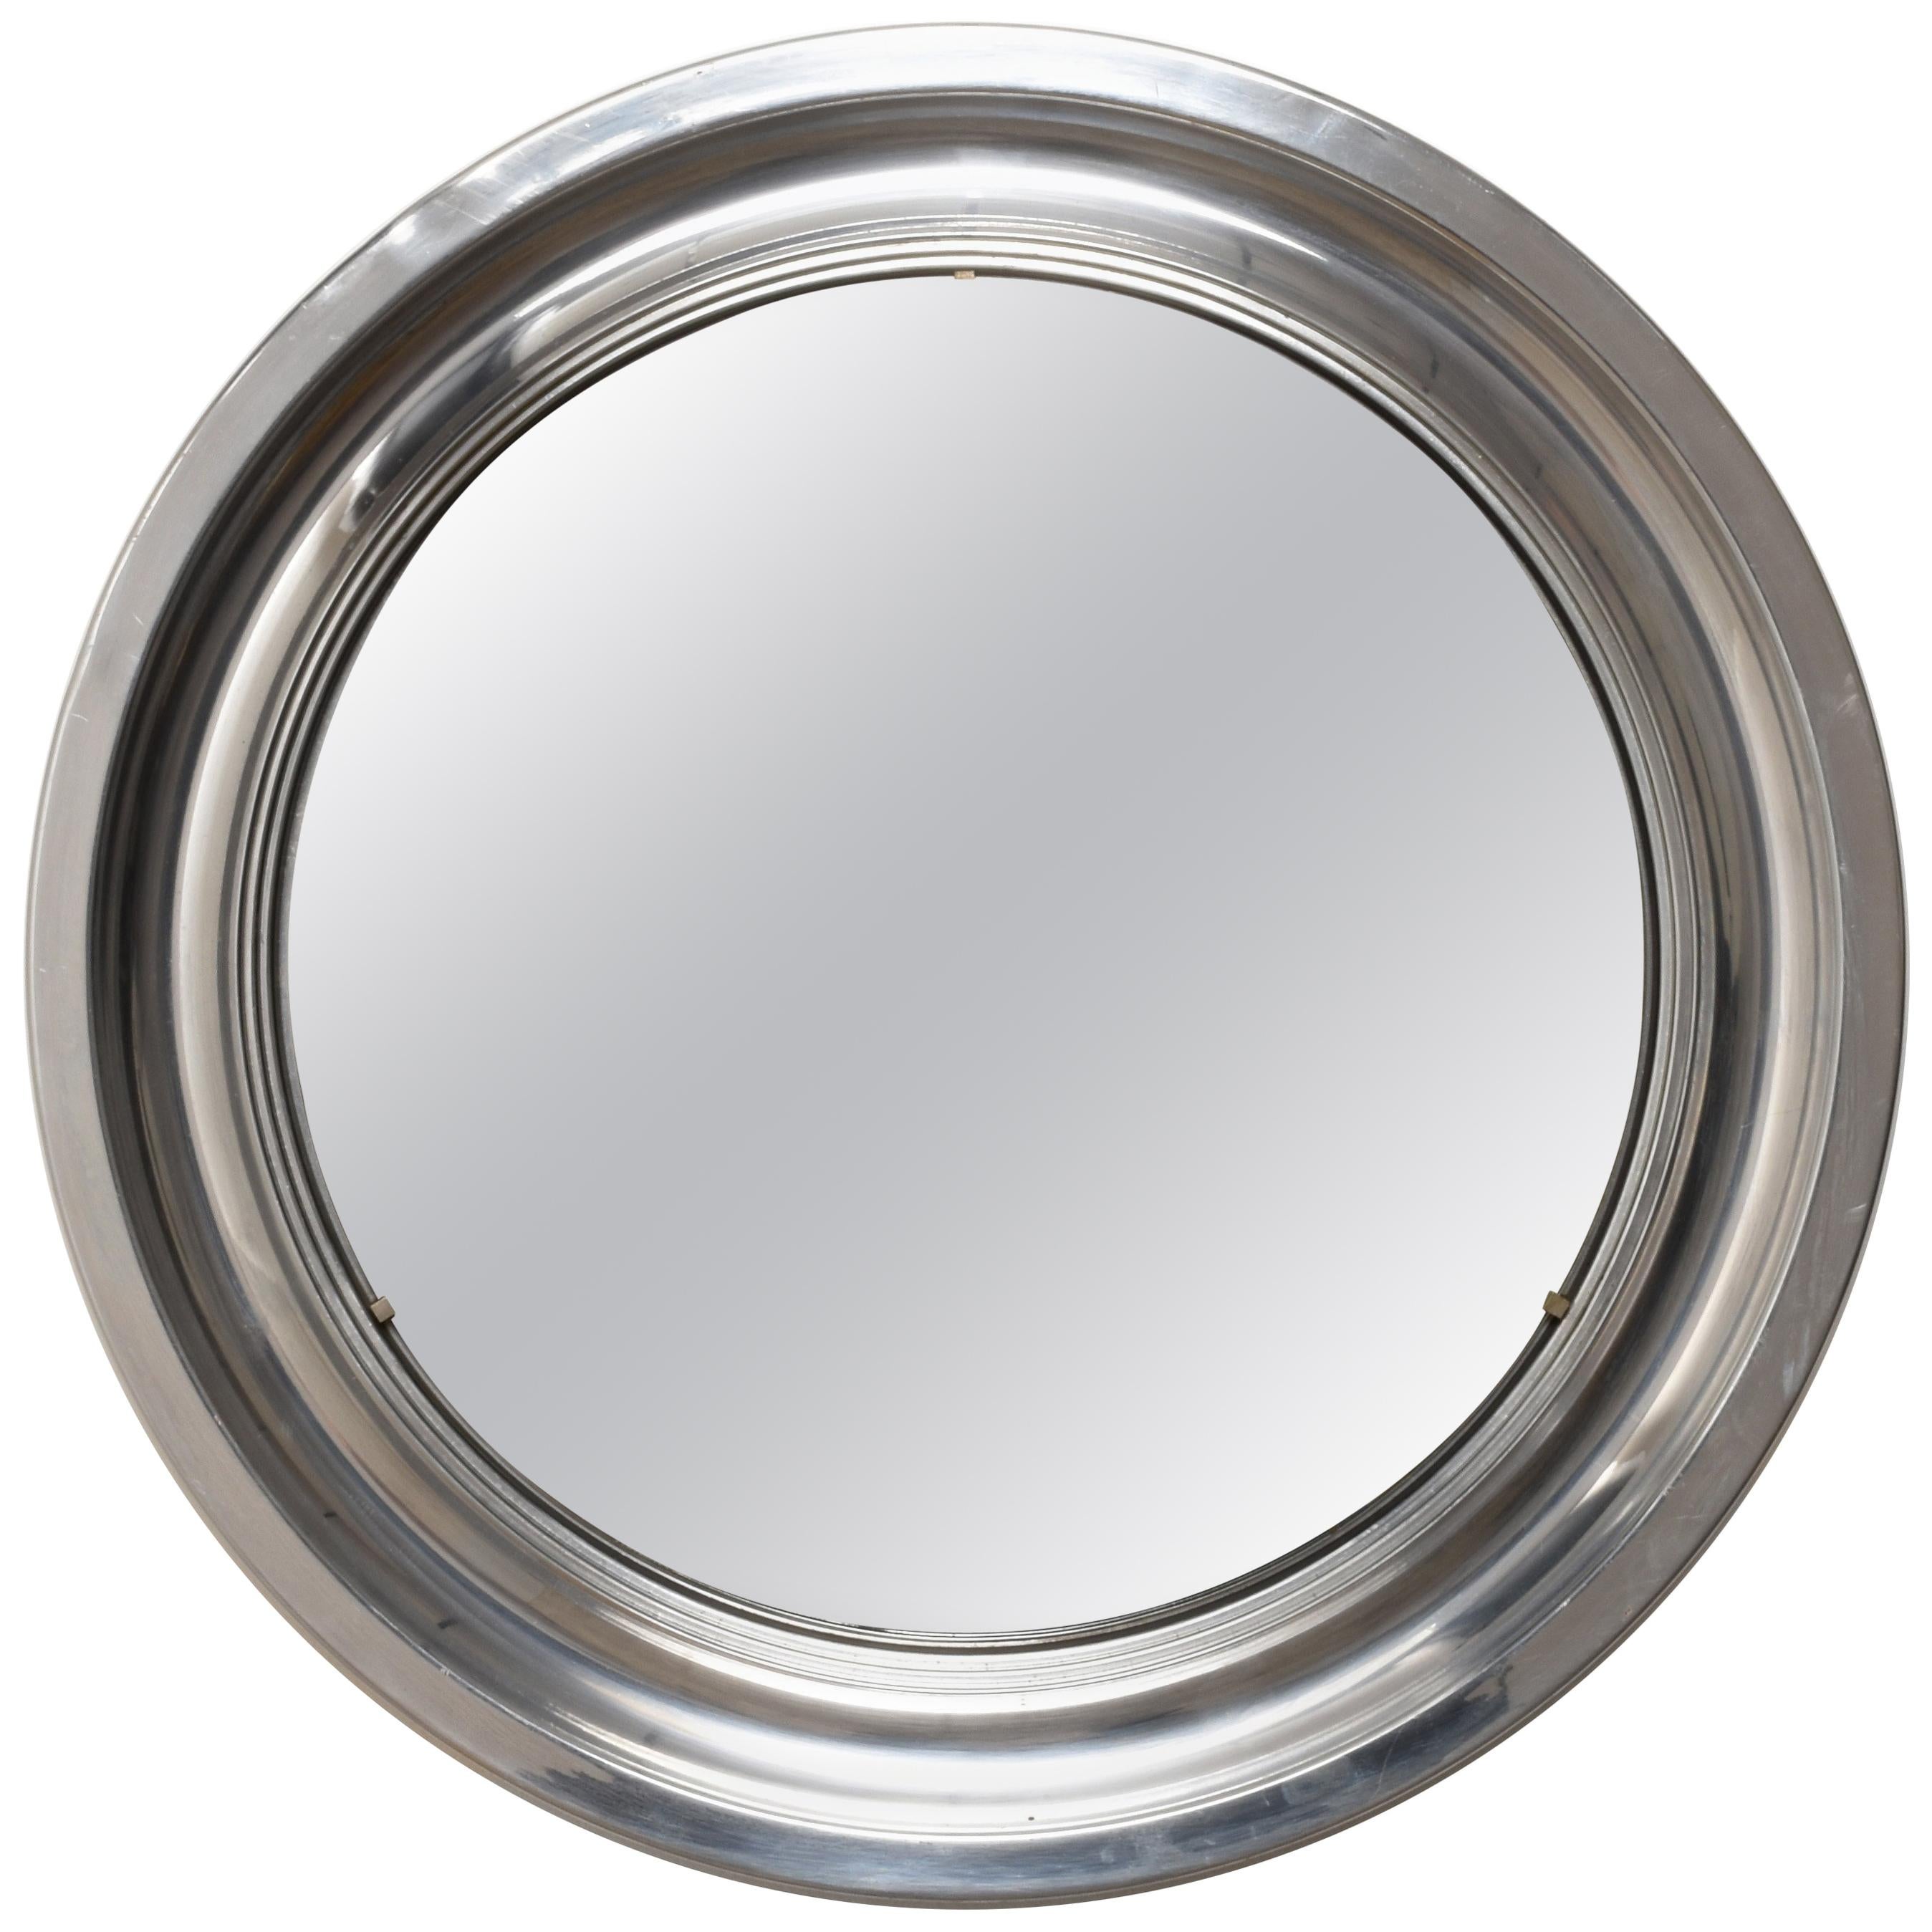 Round Mirror, Aluminum Vintage, Italy 1960s Midcentury Modern, Artemide Style